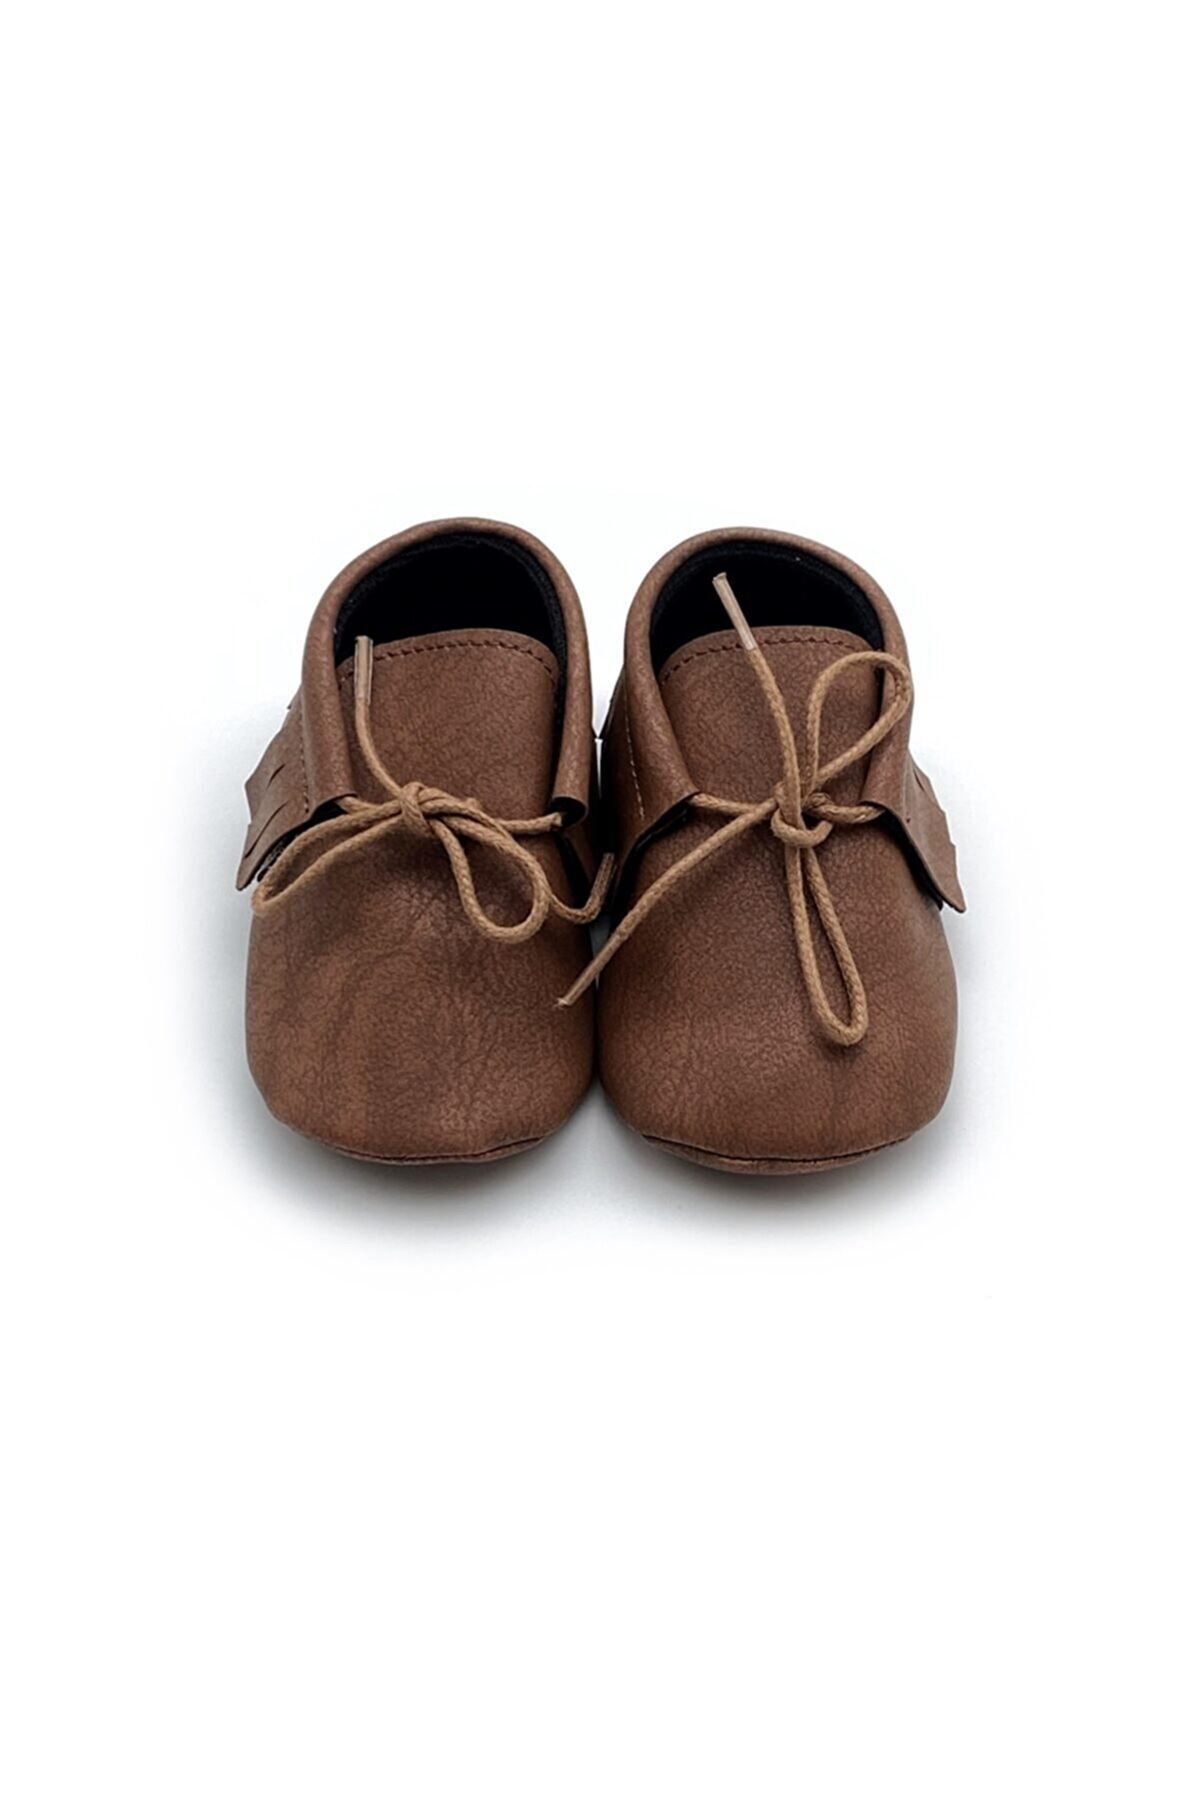 TUĞRA CENTER Baby Tuğra El Yapımı Bağcıklı Makosen Patik Bebek Ayakkabı - Kahve